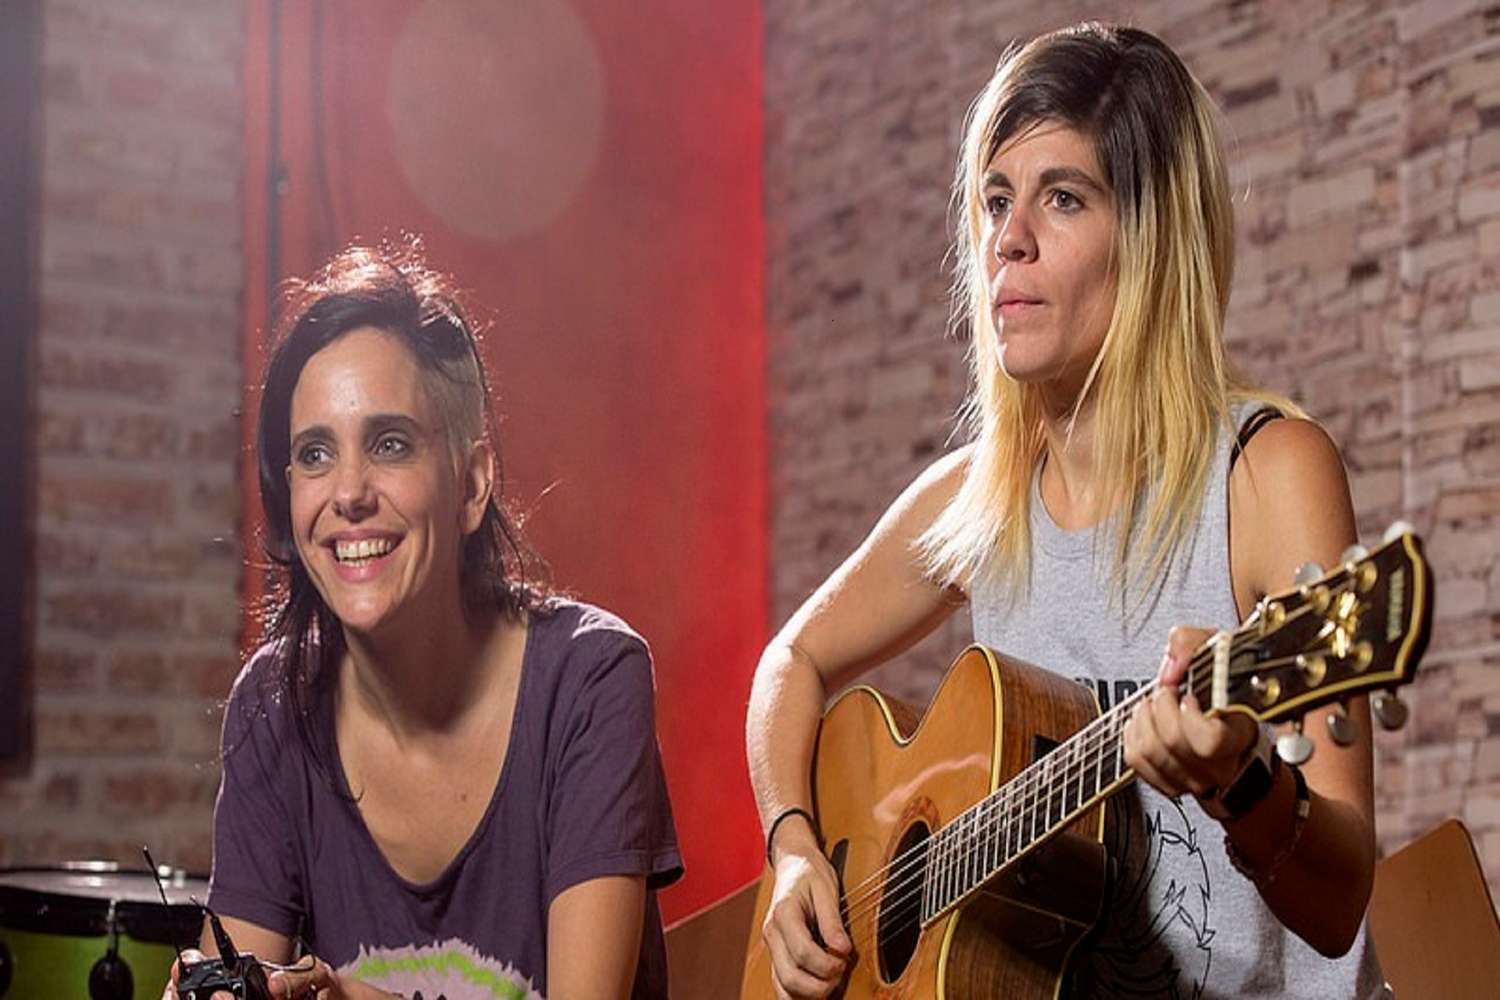 Mujeres músicas en diálogo: todos los domingos de marzo